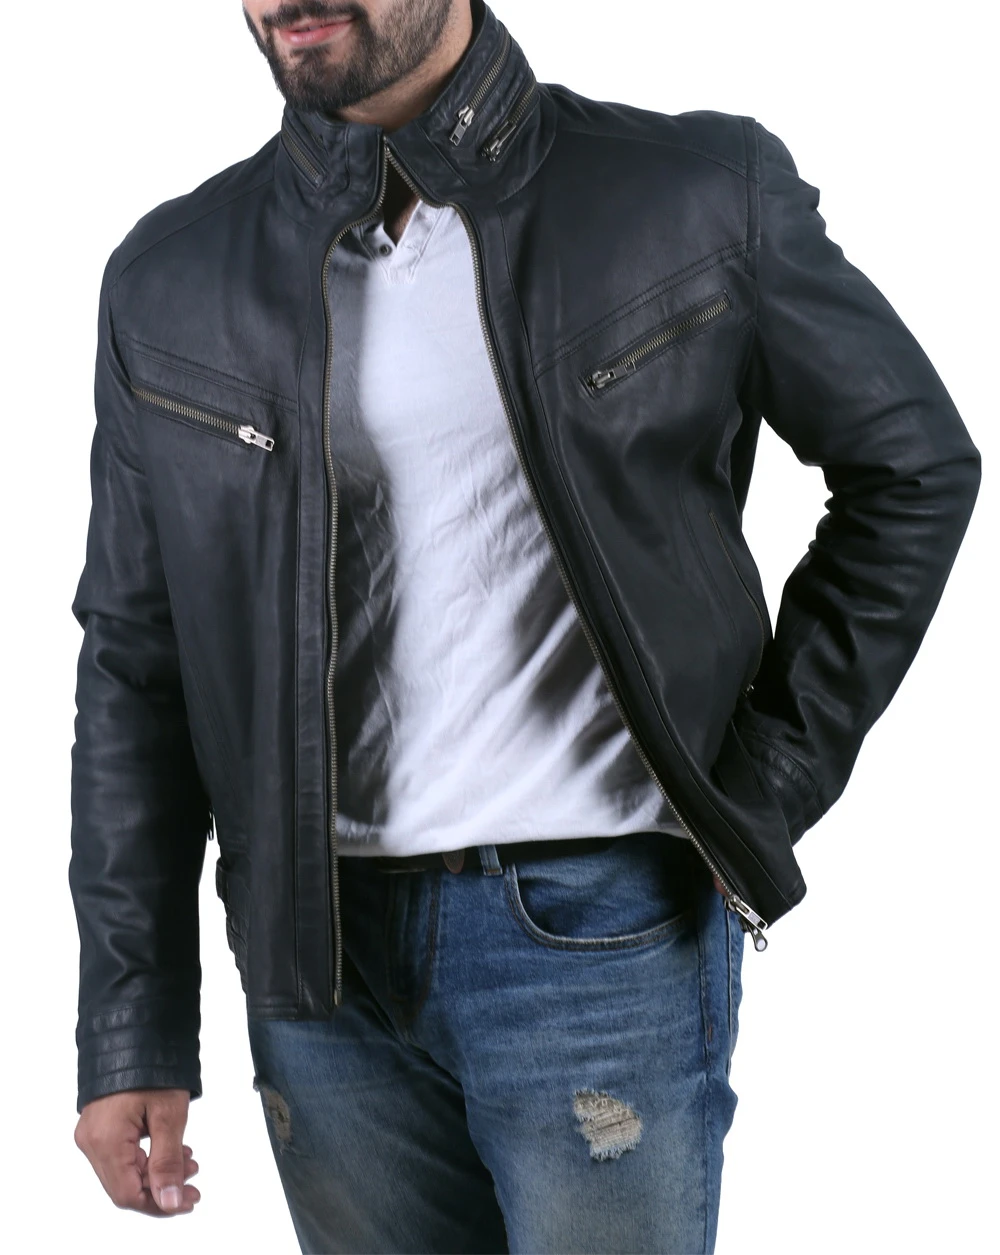 Wide neck black leather biker jacket for men